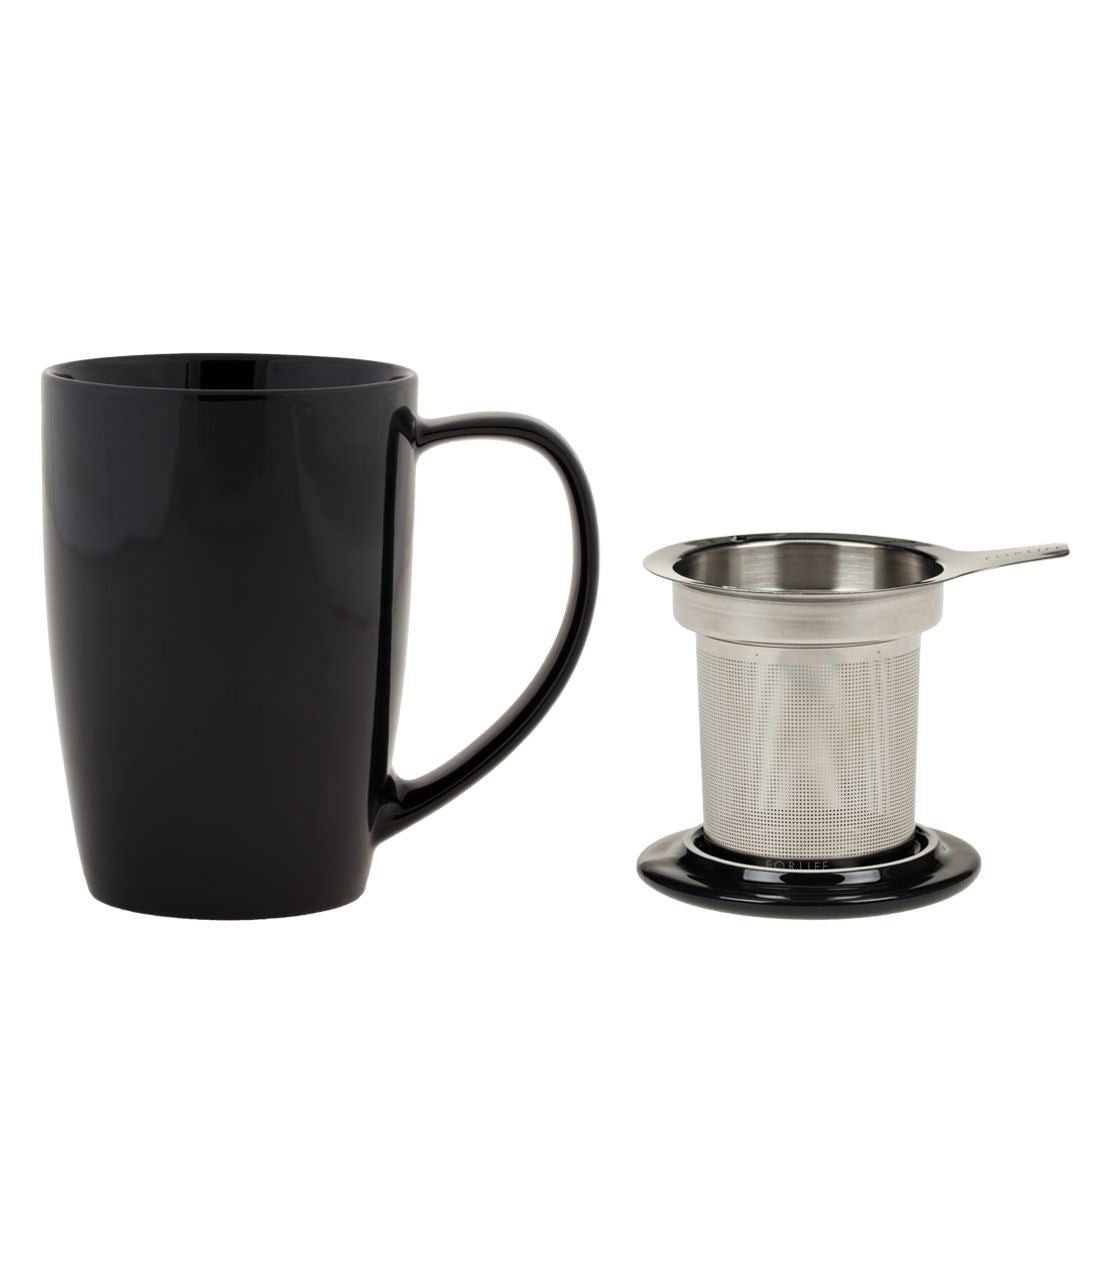 The Best Tea Infuser Mug For Brewing Loose Leaf Tea